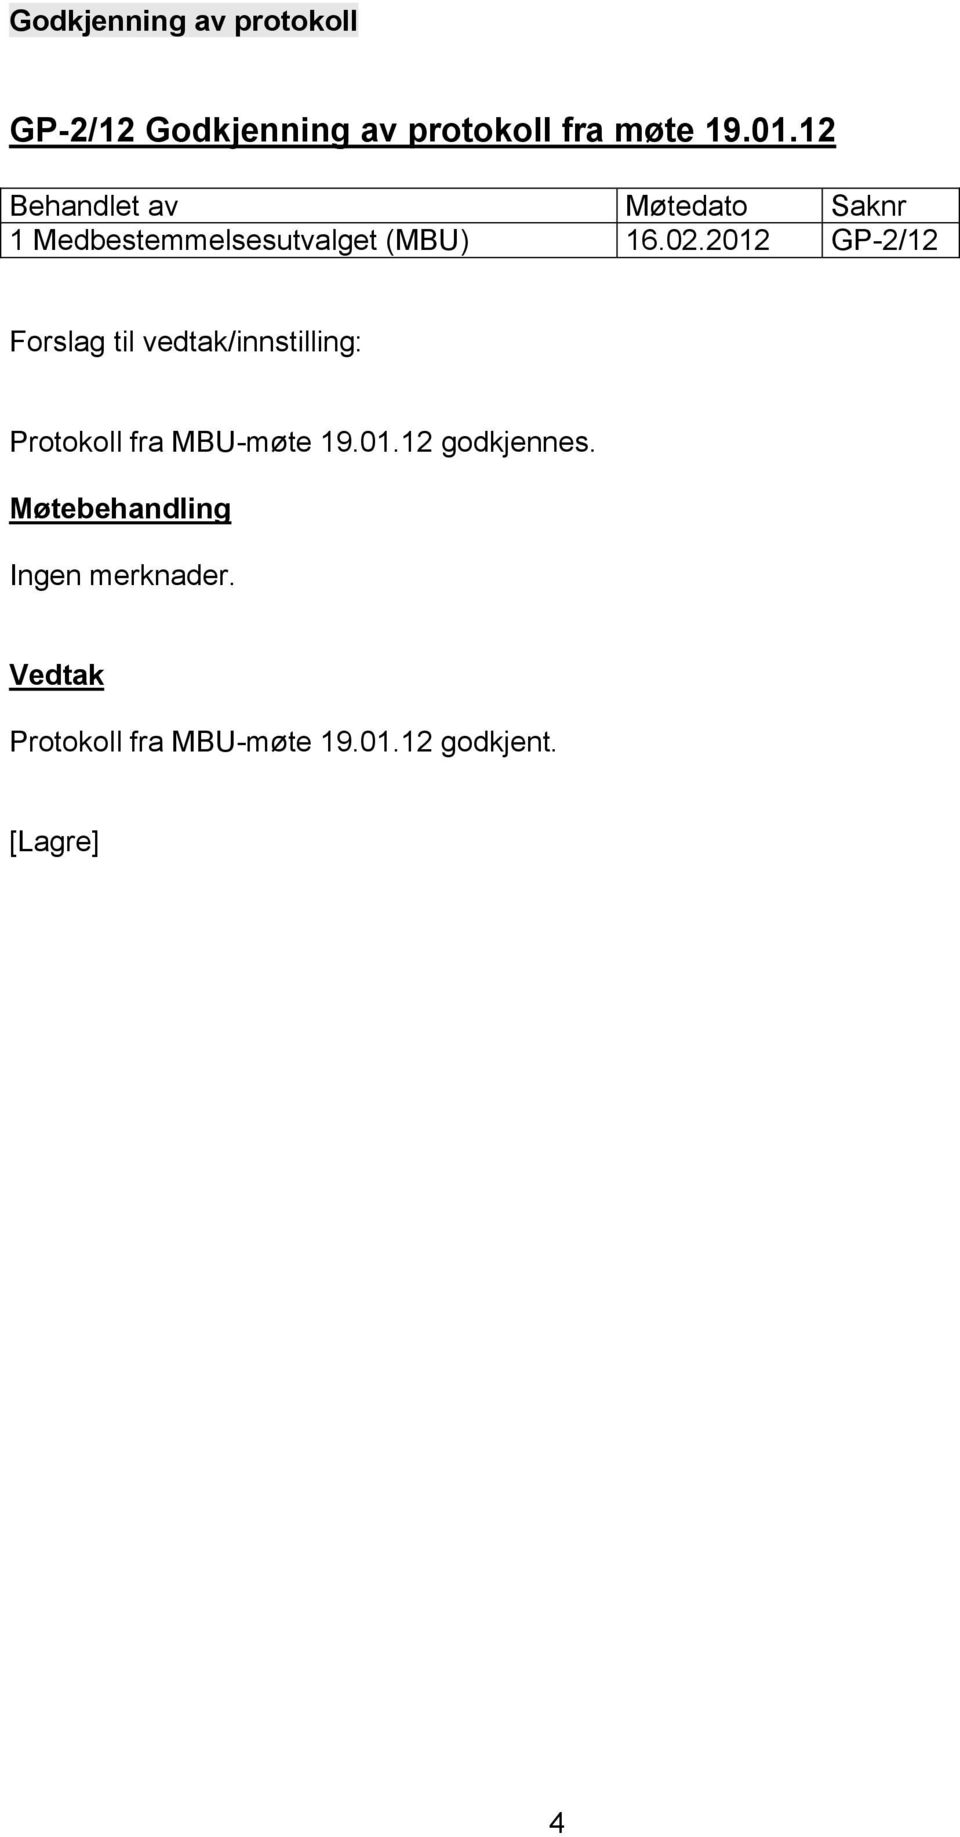 2012 GP-2/12 Protokoll fra MBU-møte 19.01.12 godkjennes.